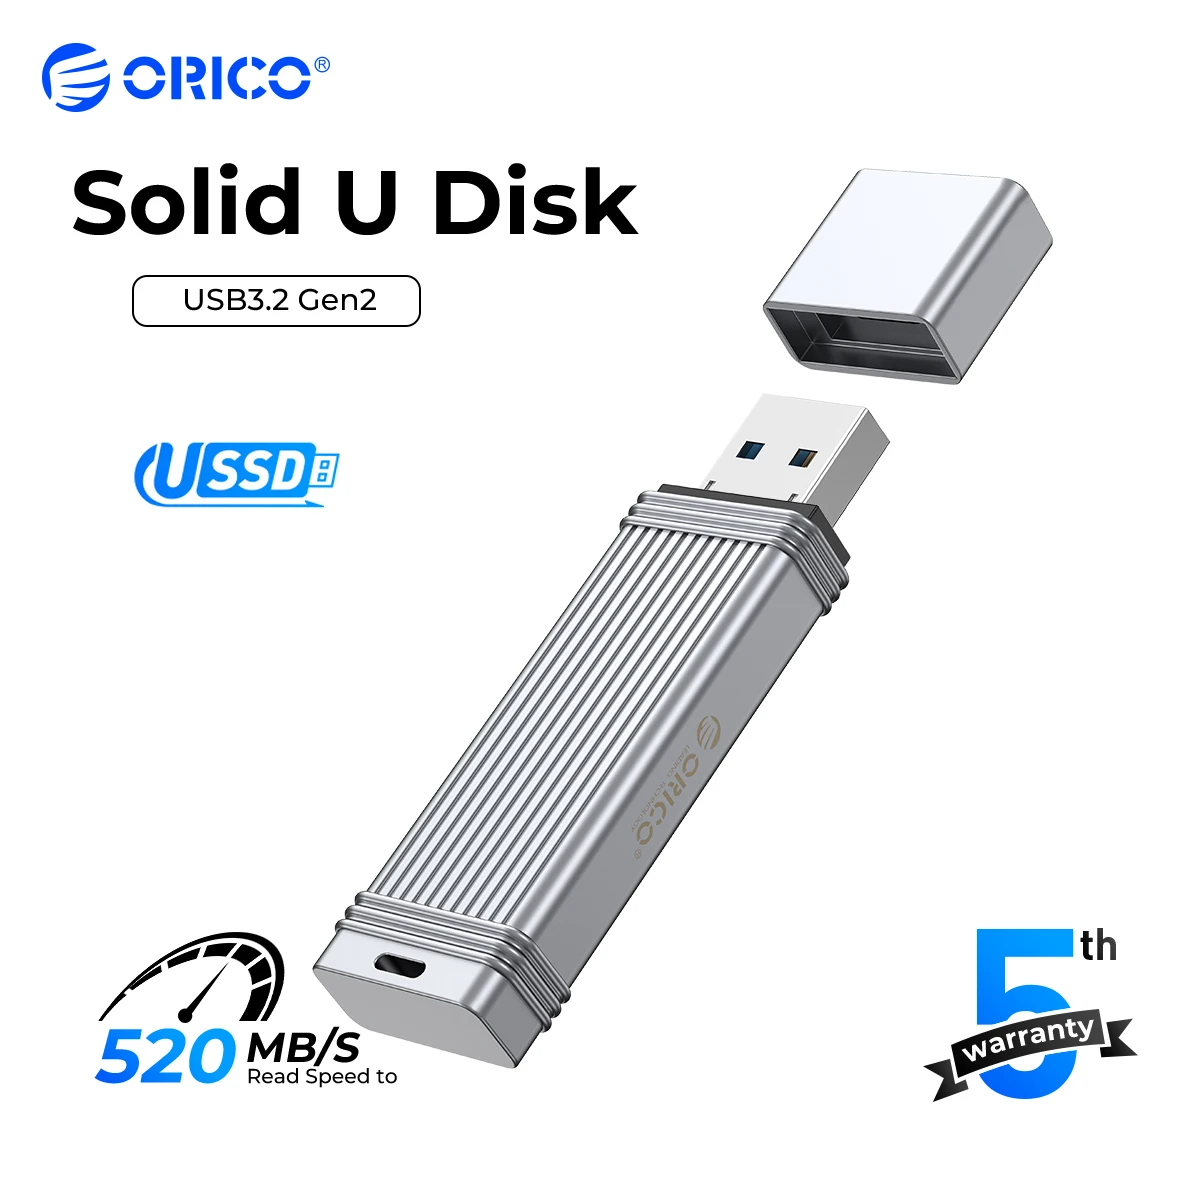 orico-ussd-disco-movel-de-estado-solido-u-pen-drive-metal-tipo-c-usb-32-520-mb-s-s-1tb-512gb-256gb-128gb